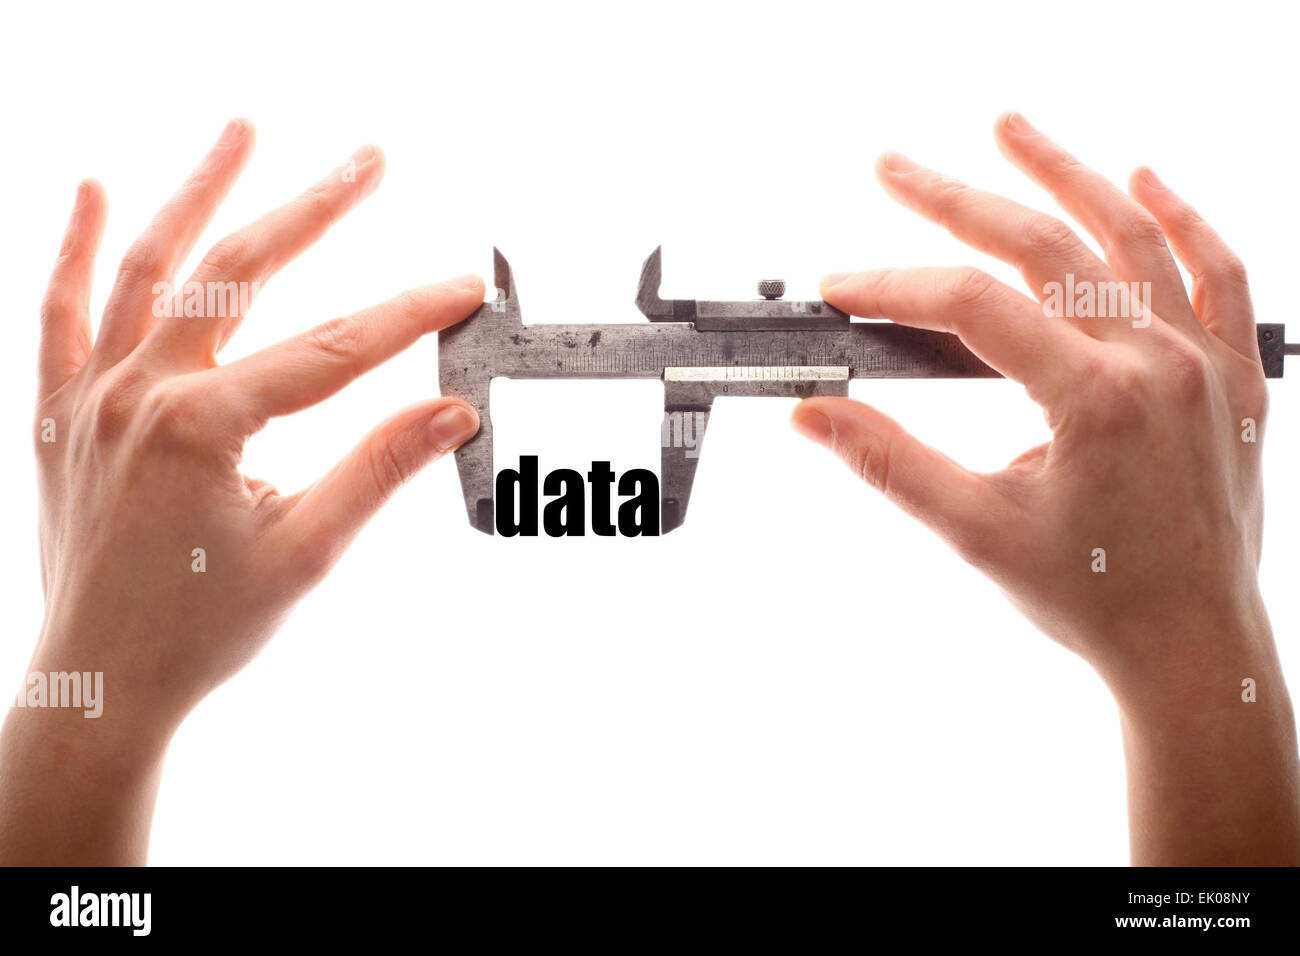 Farbe horizontalen Schuss von zwei Hände halten ein Bremssattel und messen das Wort "Daten". Stockfoto